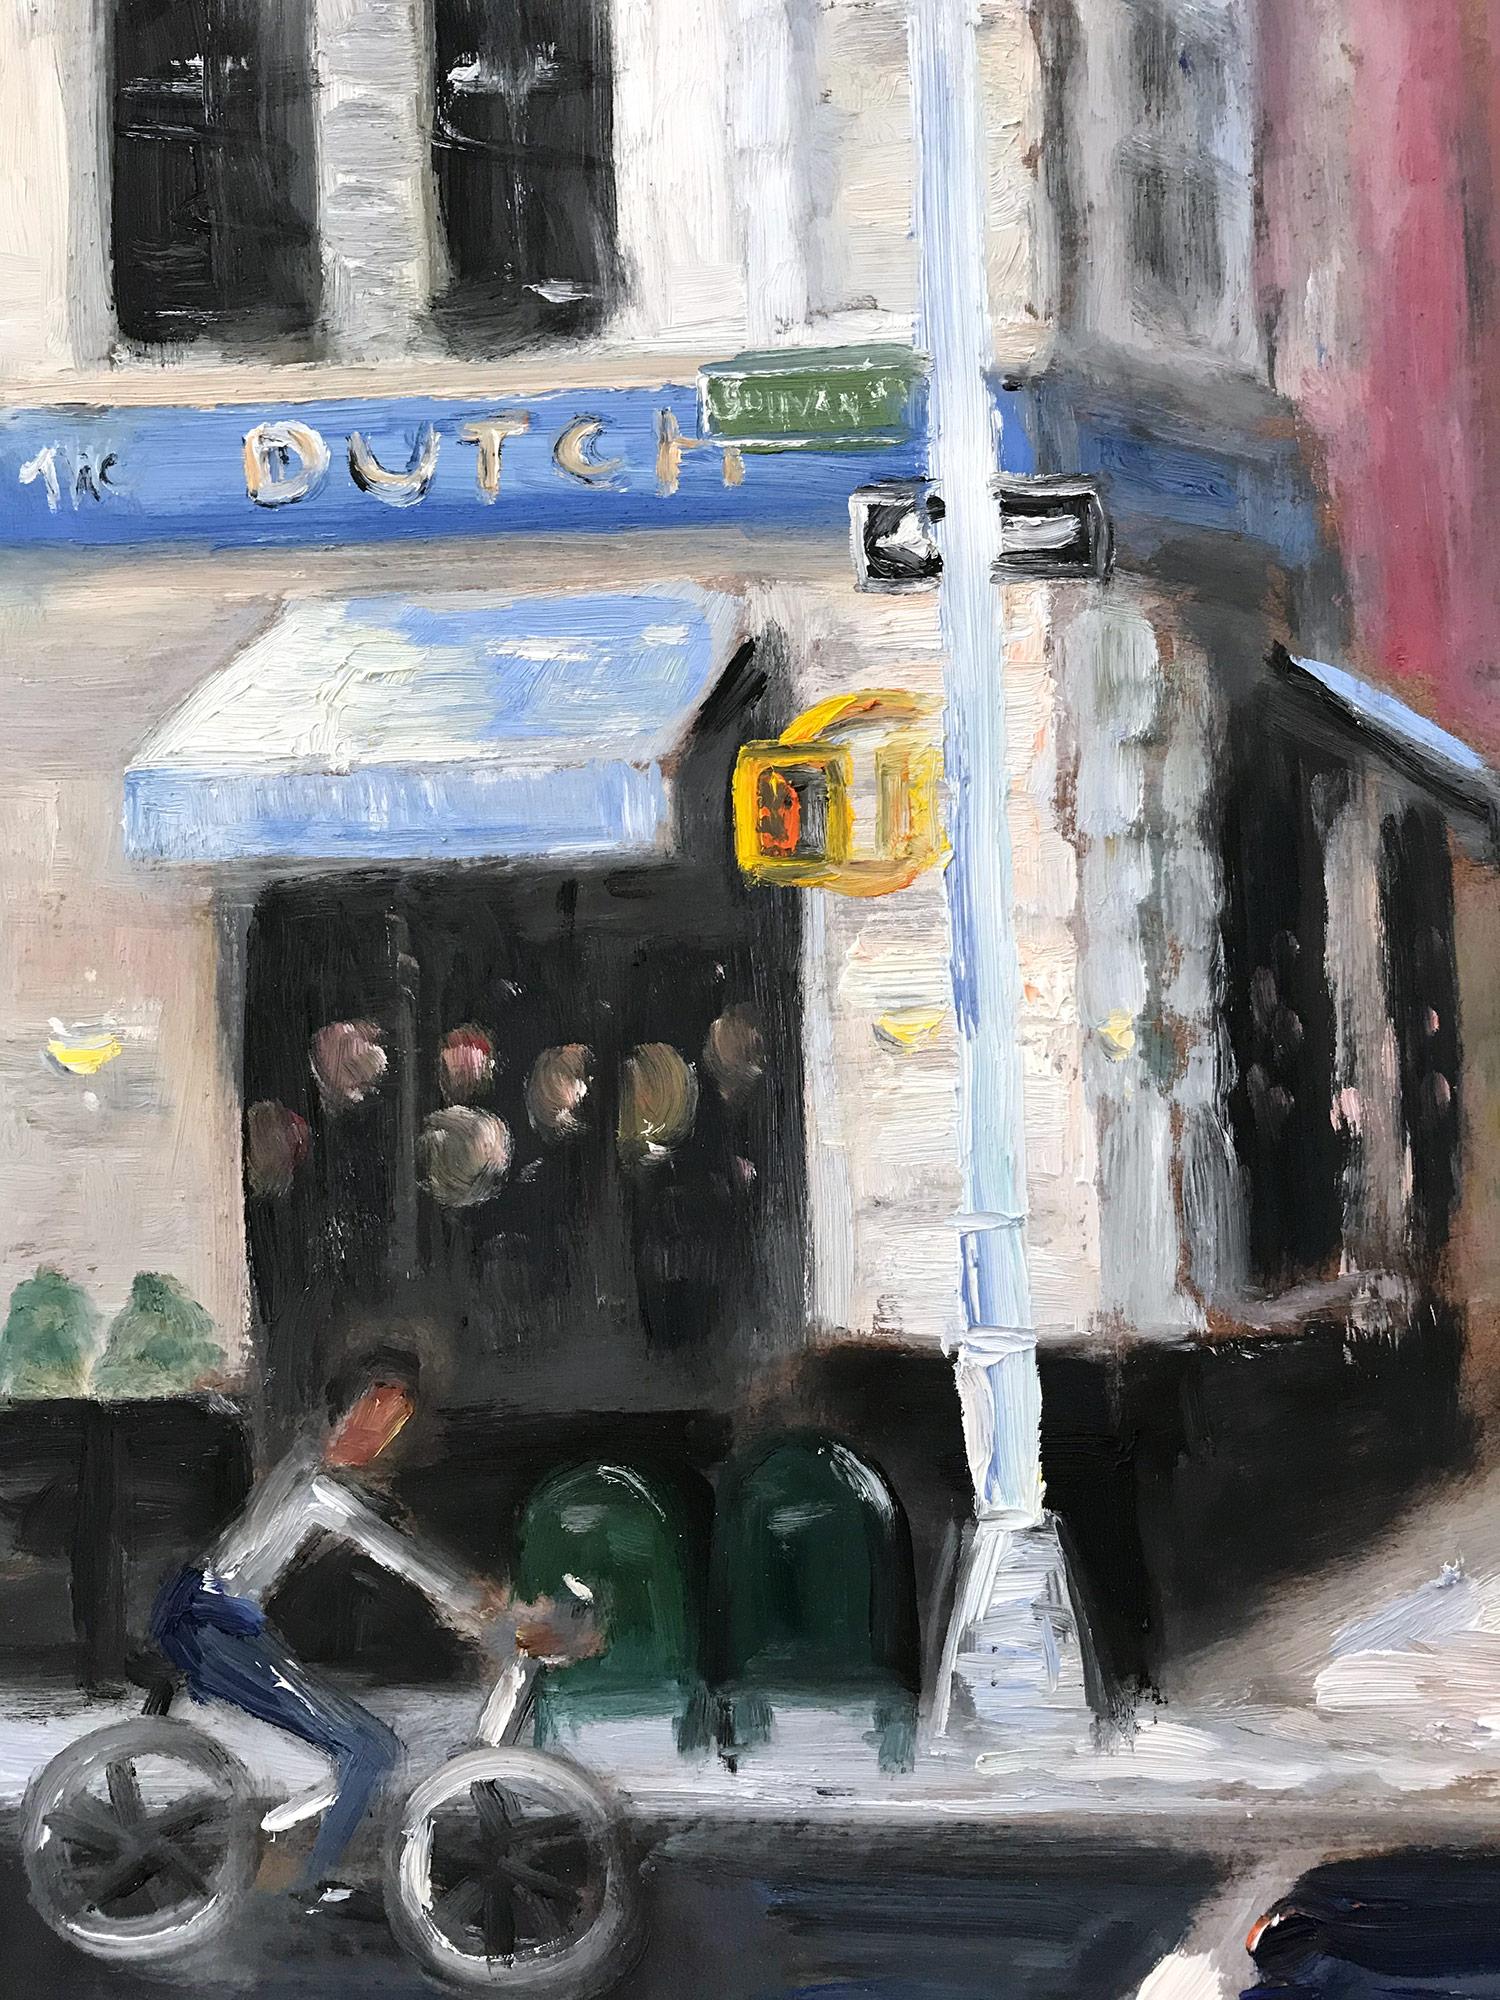 Impressionistisches Ölgemälde auf Karton „The Dutch“ Plein Air mit Figuren und Autos, Impressionistisches Ölgemälde (Amerikanischer Impressionismus), Painting, von Cindy Shaoul